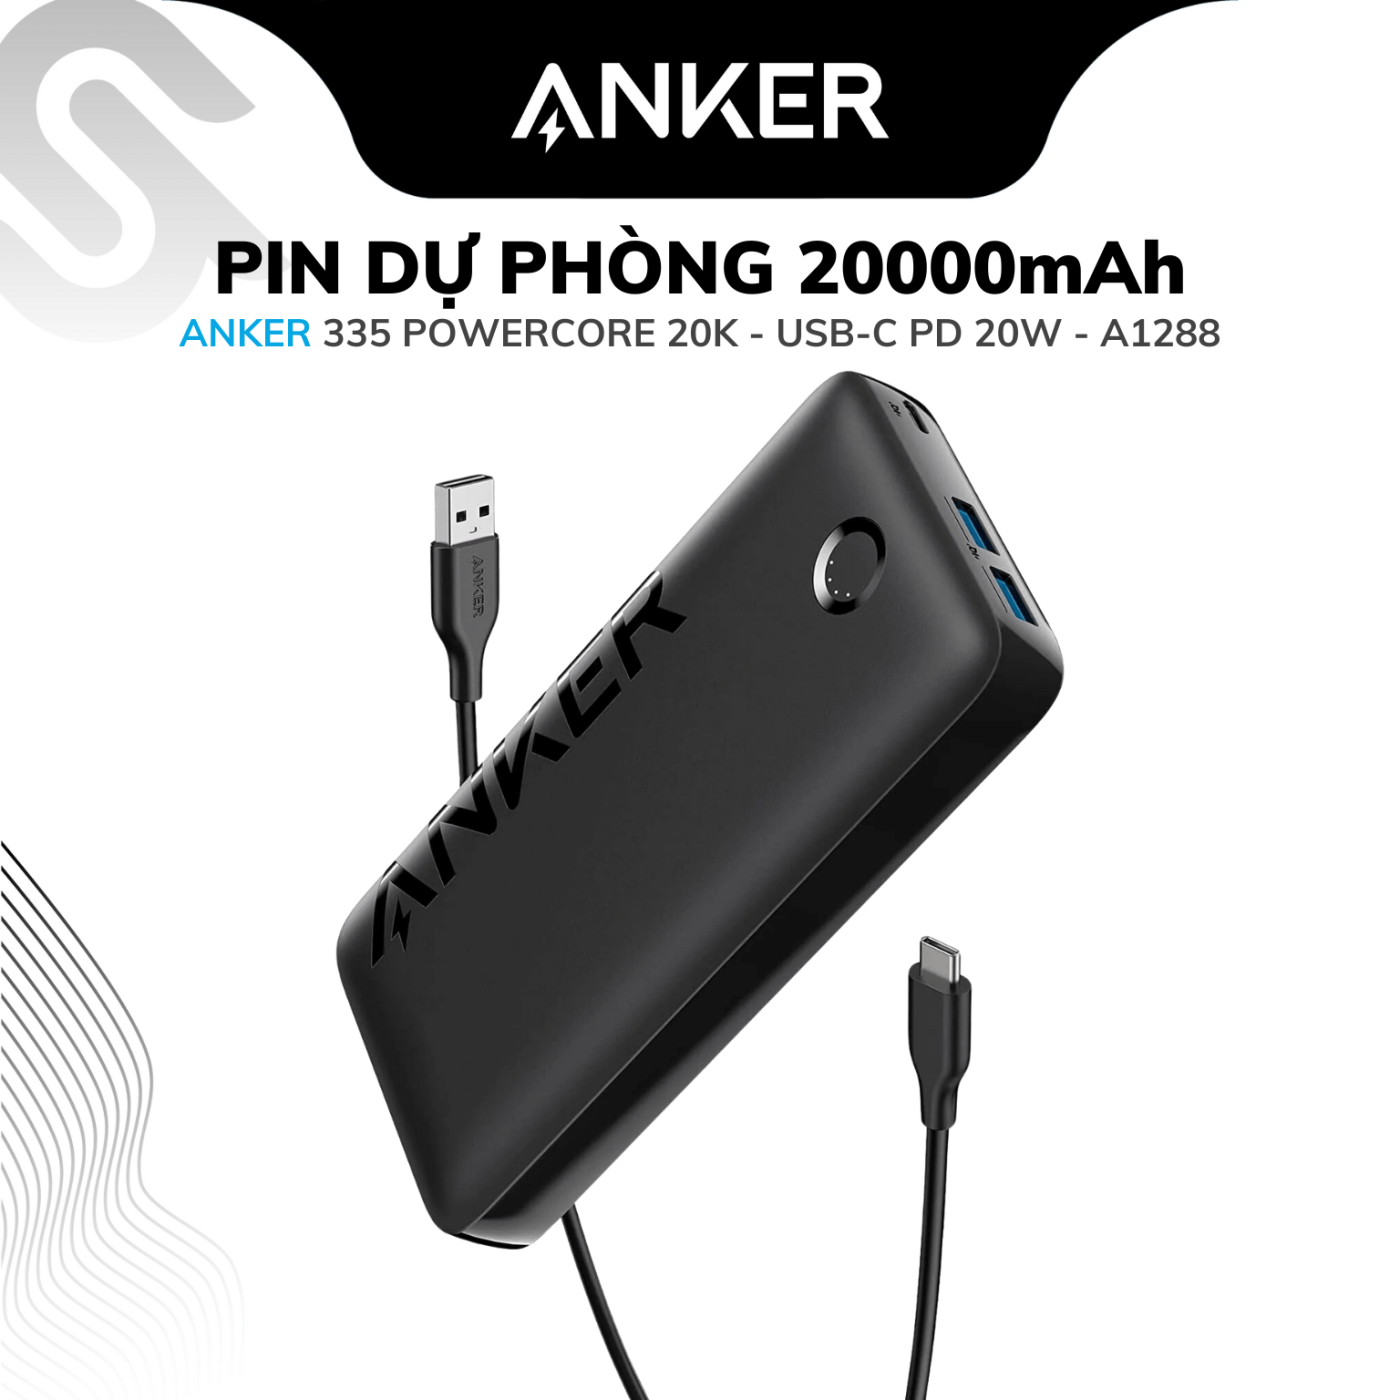 Pin sạc dự phòng ANKER 335 PowerCore 20K, USB-C PD 20W - A1288 - Mới 100% - Chính hãng AnkerVN